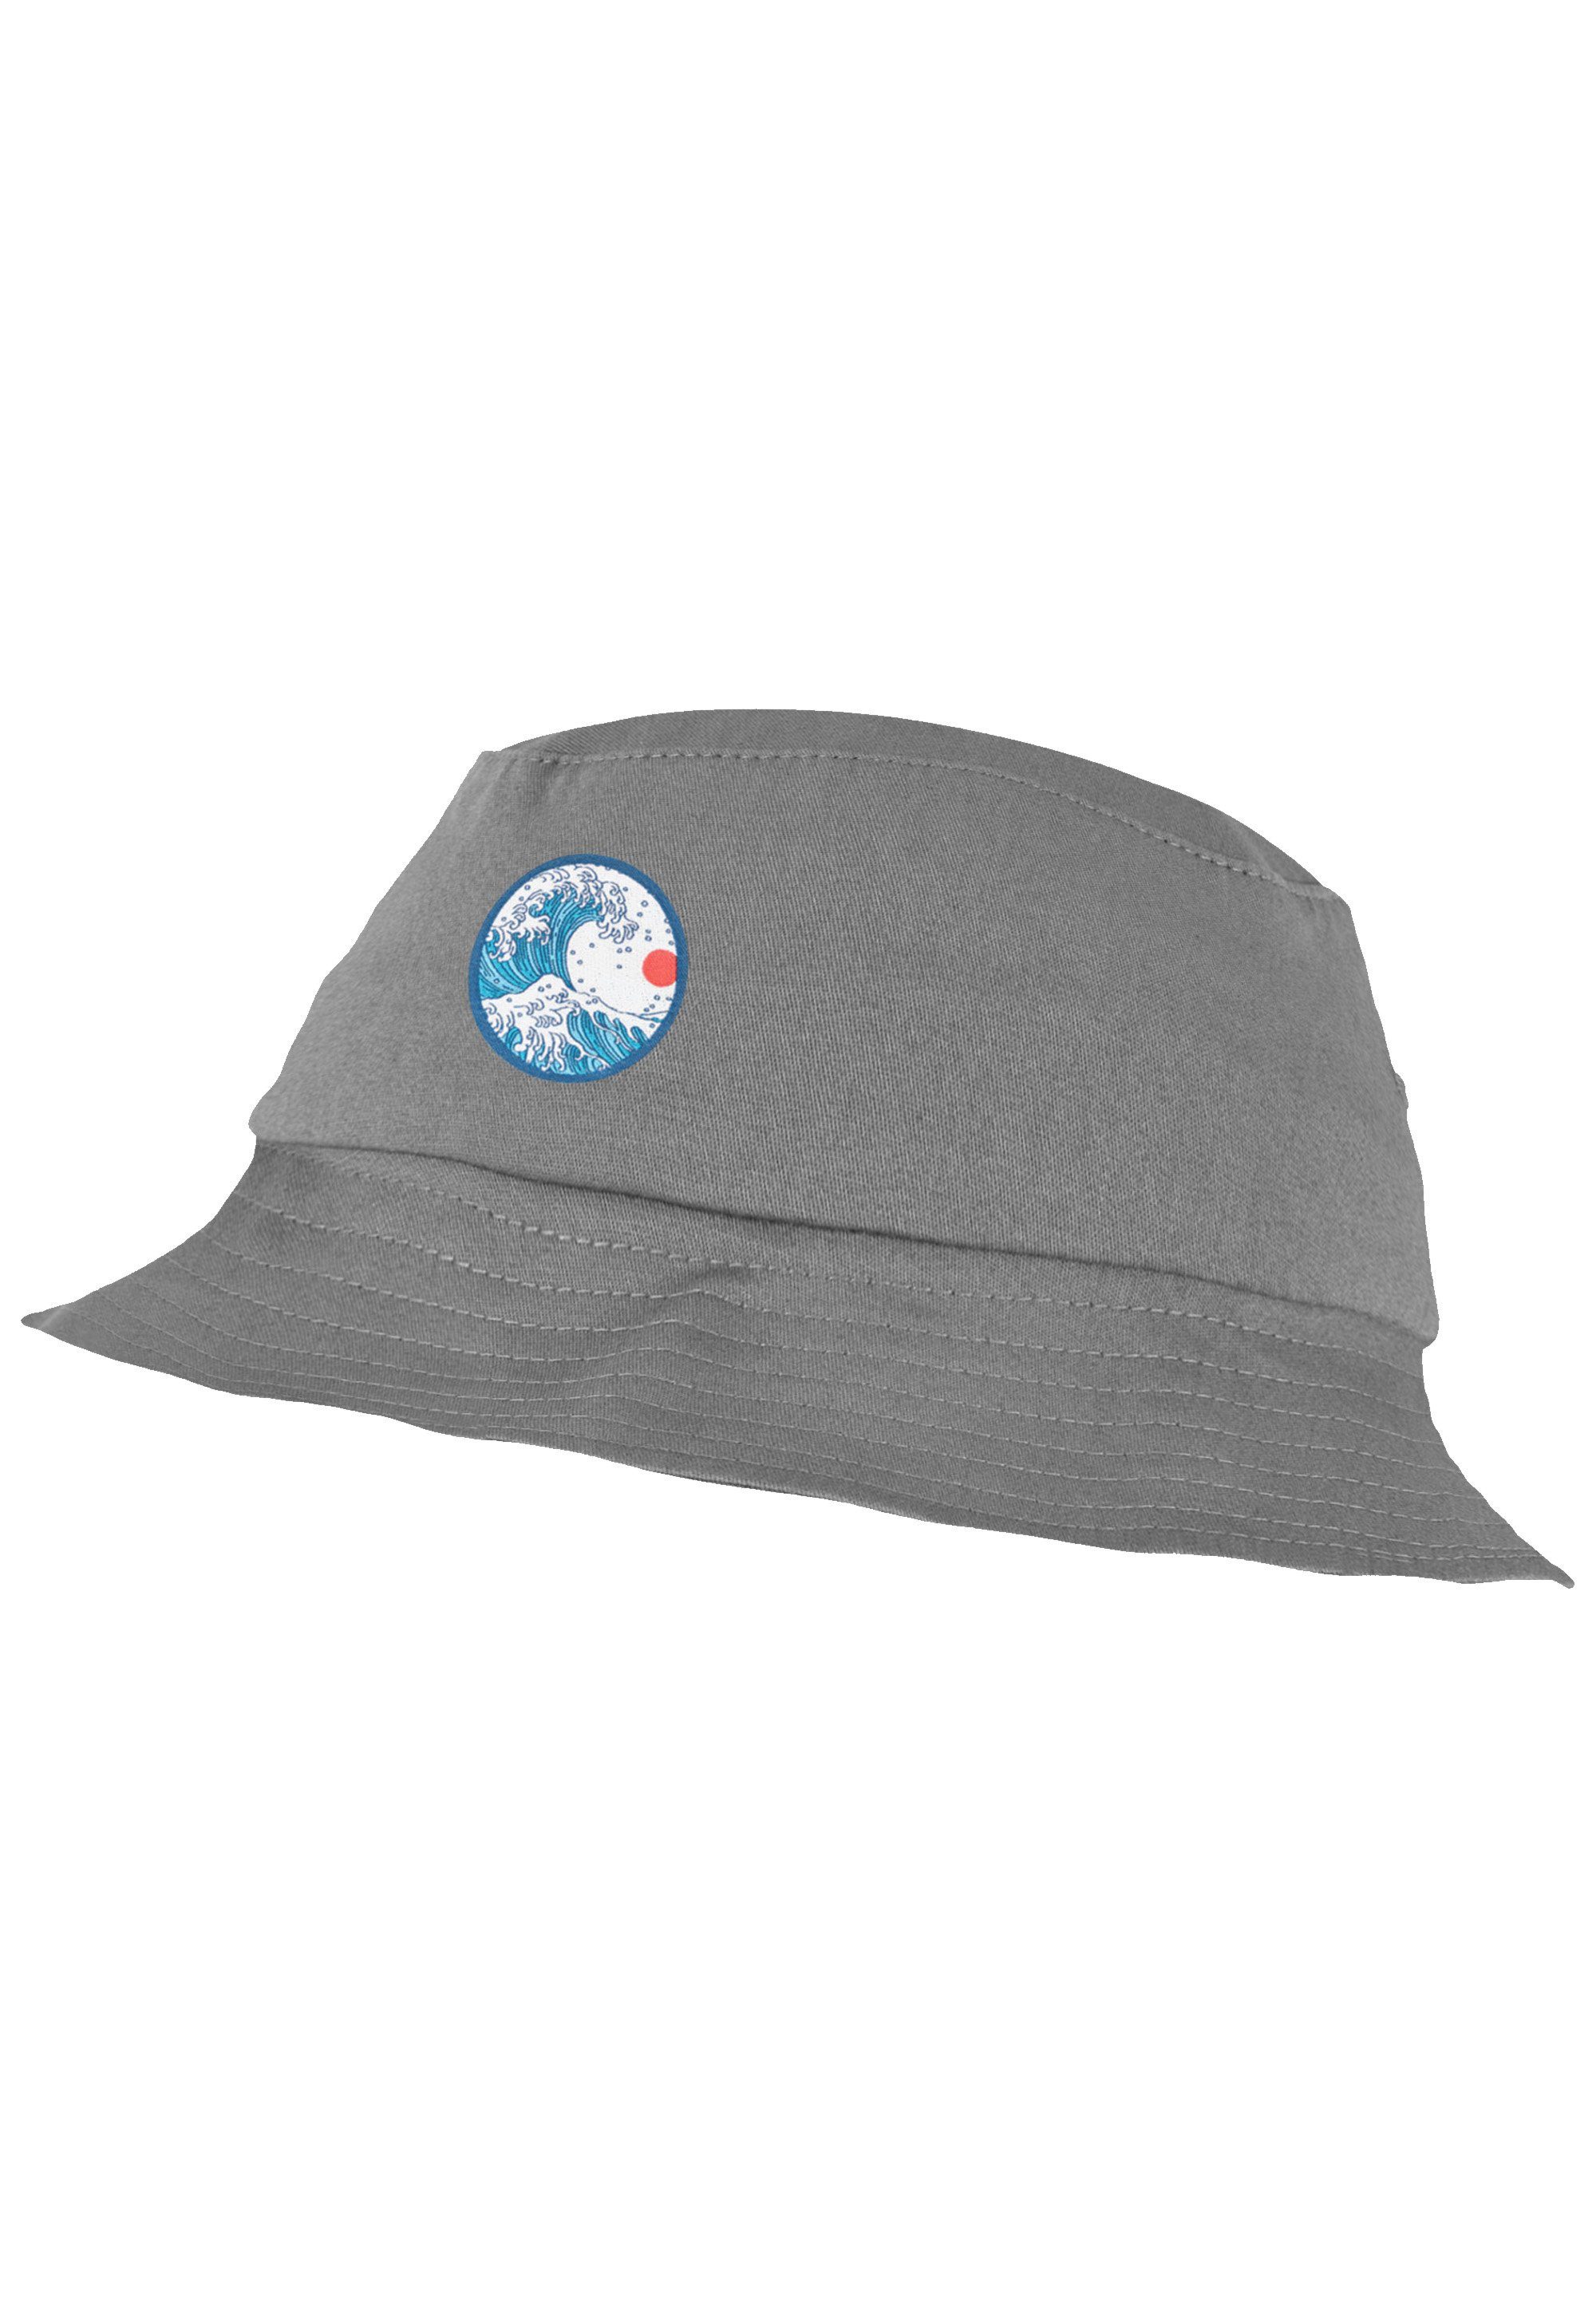 F4NT4STIC Fischerhut Kanagawa grey Hat Bucket